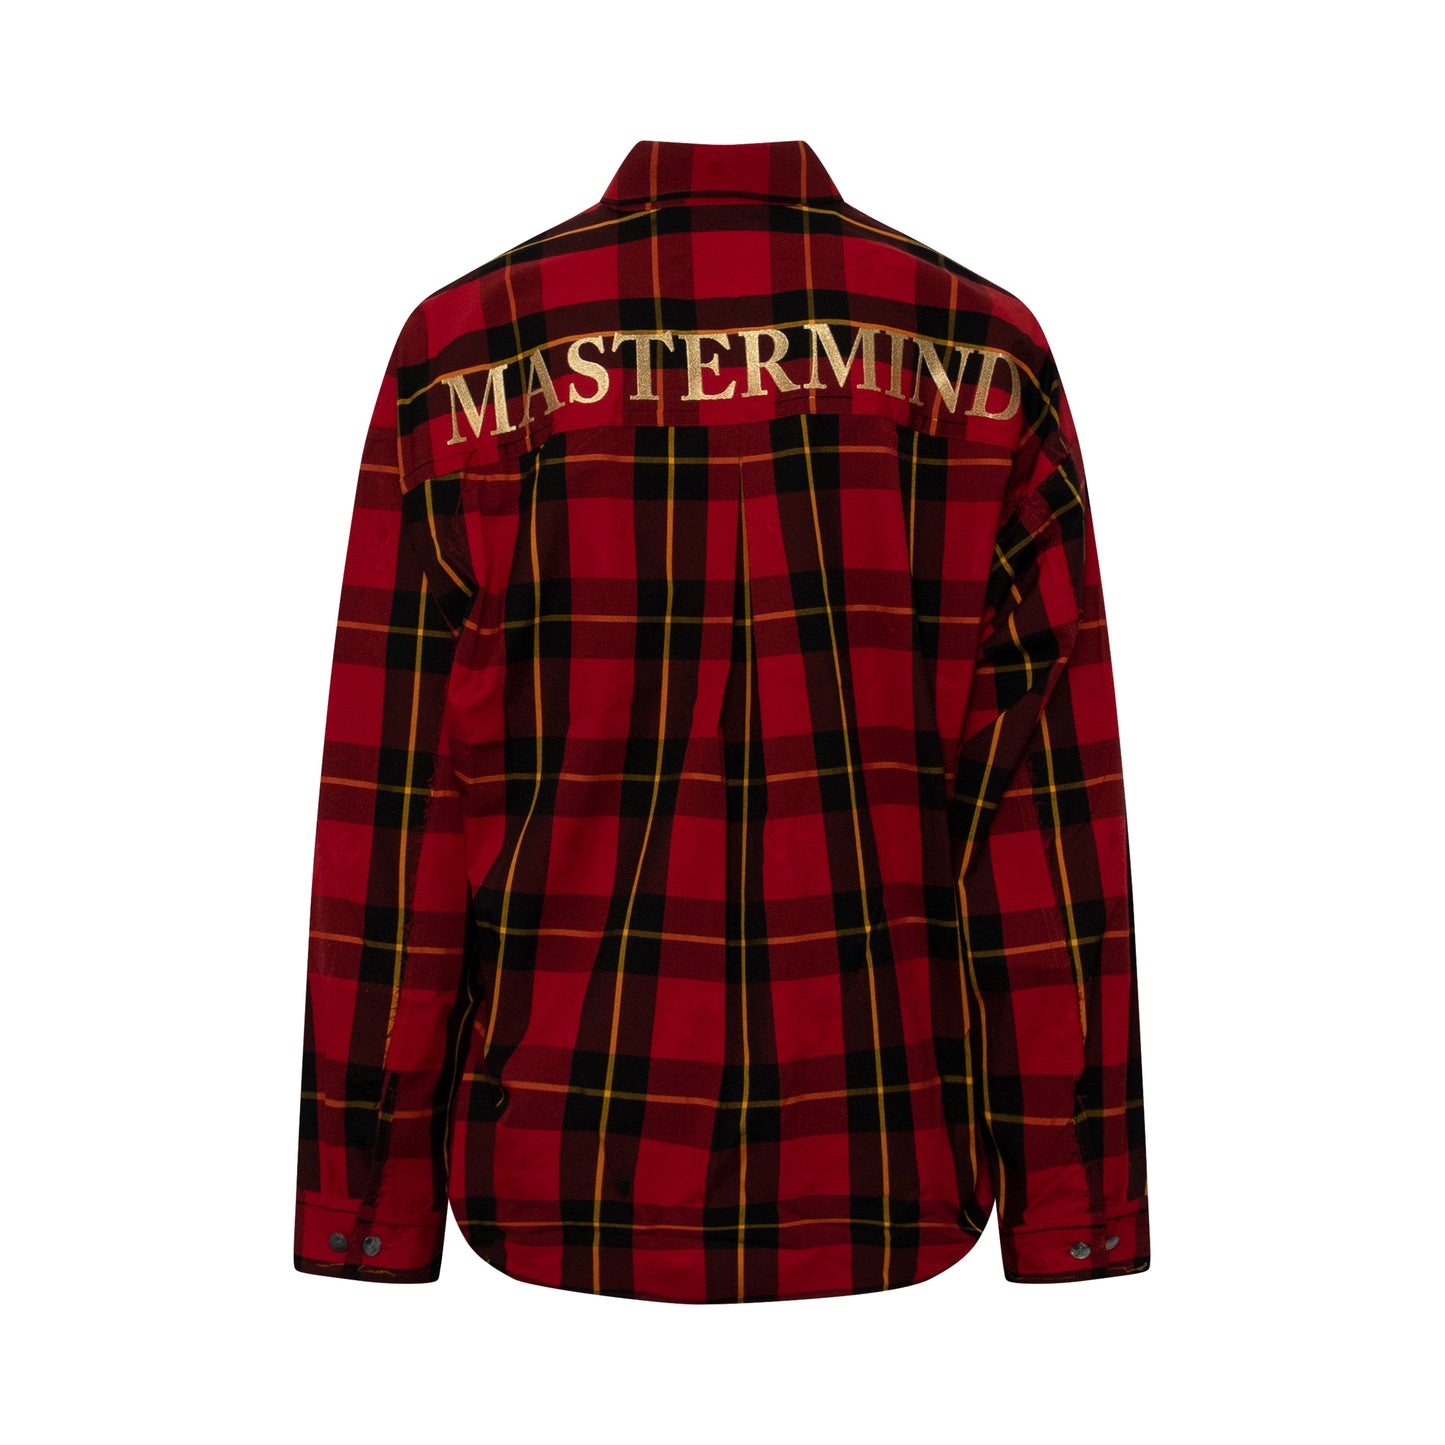 Mastermind World Shirt in Red